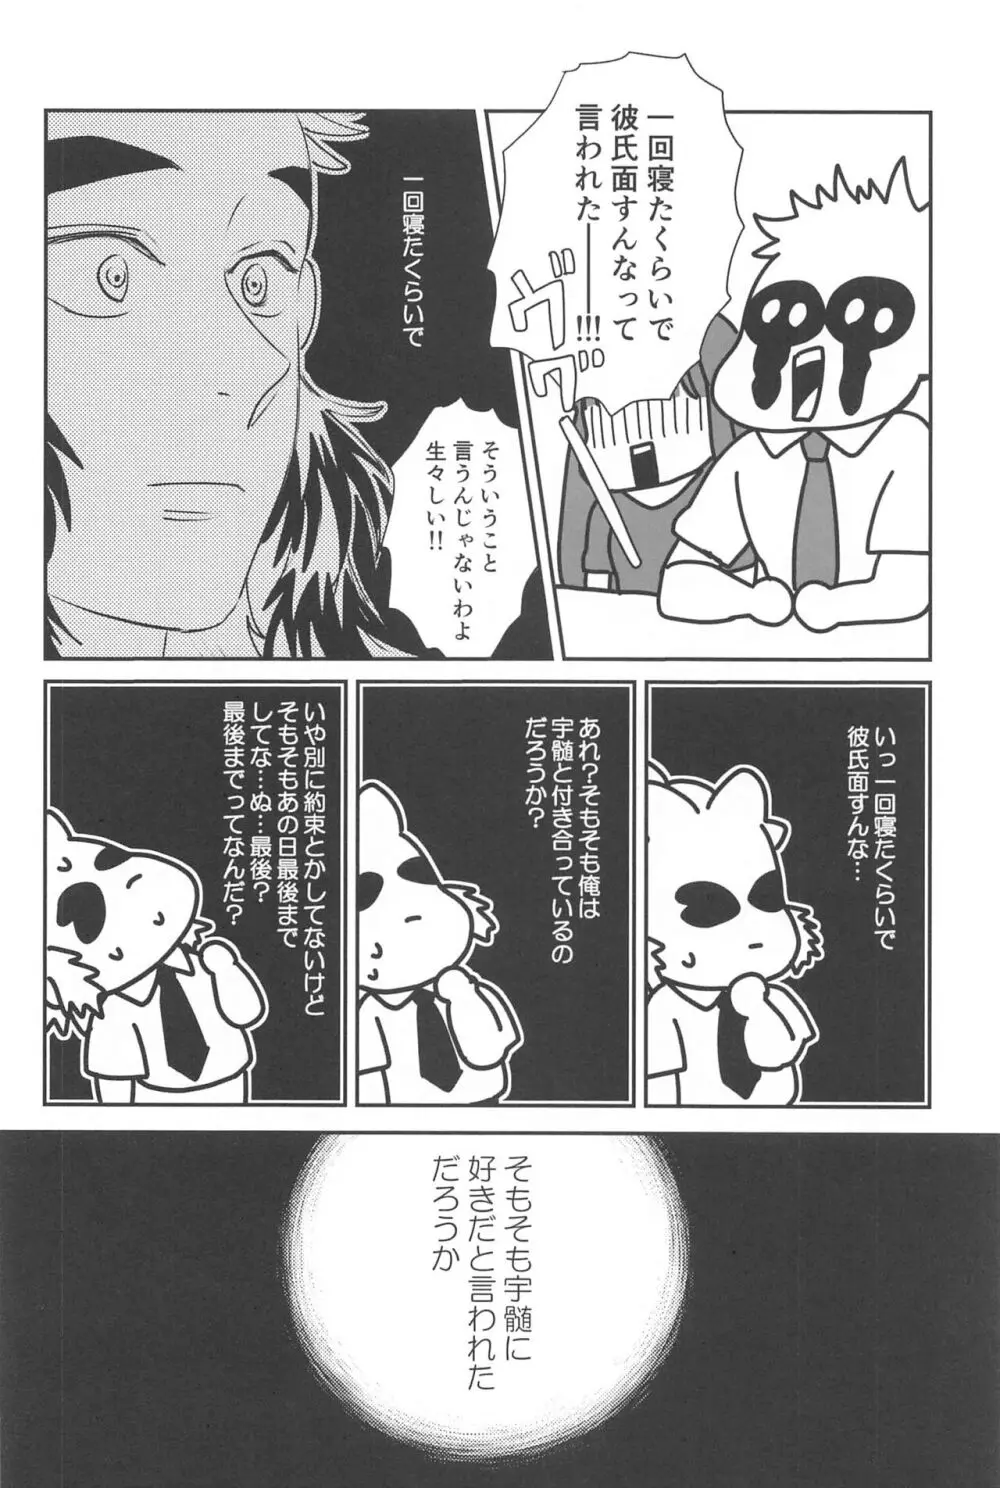 待ってくれ恋愛初心者なんだ! - page31